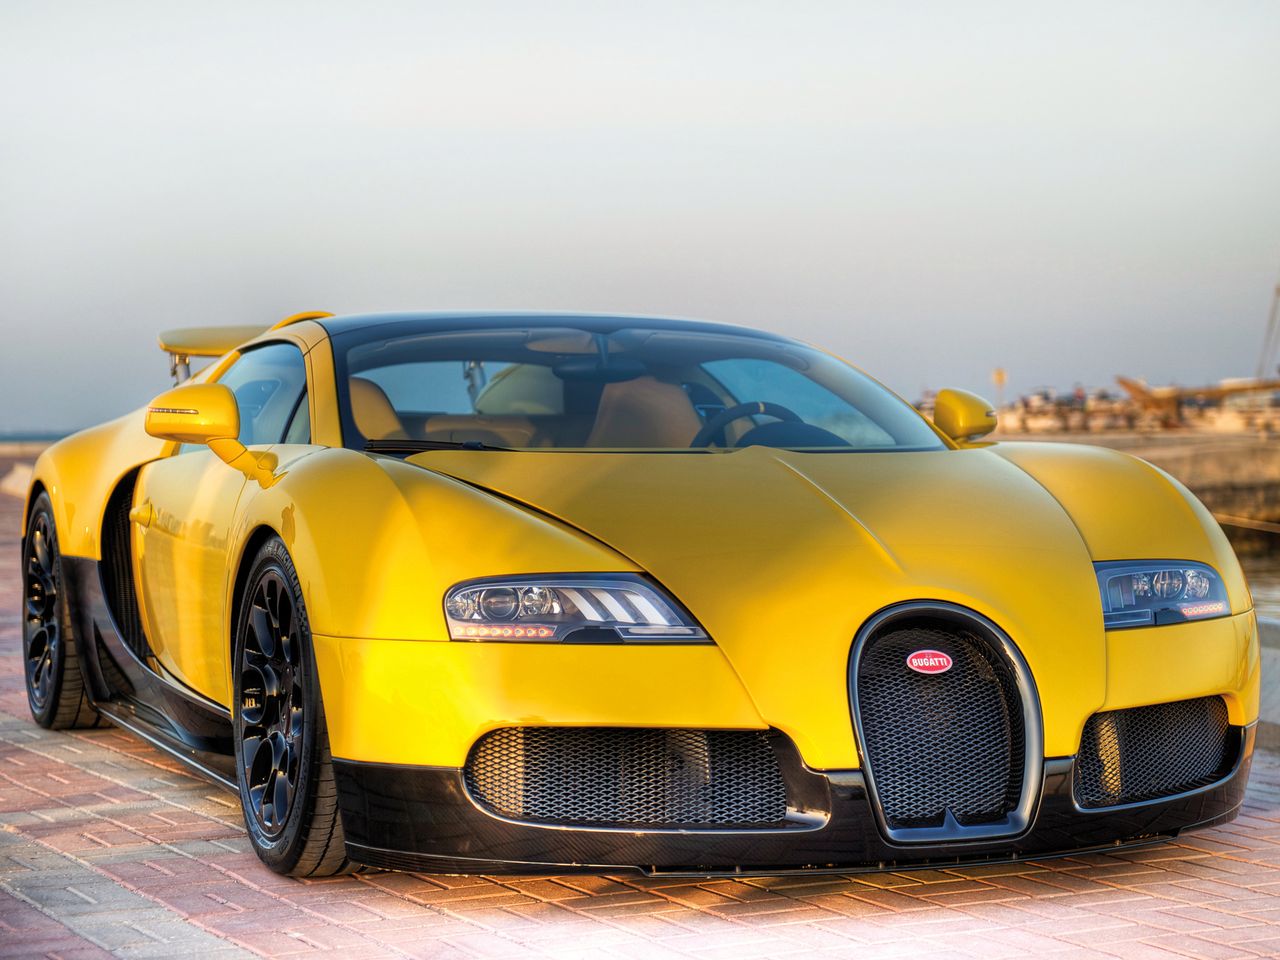 Bugatti przez cały okres produkcji Veyrona nie zapominało gdzie ma duże grono odbiorców. Dlatego powstała między innymi odmiana Middle East Edition. Łącznie zbudowano trzy egzemplarze tej serii. Pierwszy, który widzicie na zdjęciach został pokryty żółtym i czarnym lakierem. Sprzedano go za 1,58 mln euro. Nadwozie drugiego egzemplarza pokryto delikatnie transparentnym niebieskim lakierem, przez który było widać strukturę włókna węglowego. Do tego dołożono dodatki z polerowanego aluminium. Był w nie wyposażony także trzeci egzemplarz. Różnił się on kolorem prześwitującego lakieru. Był on zielony. Te dwa egzemplarze zostały sprzedane za 1,74 mln euro.